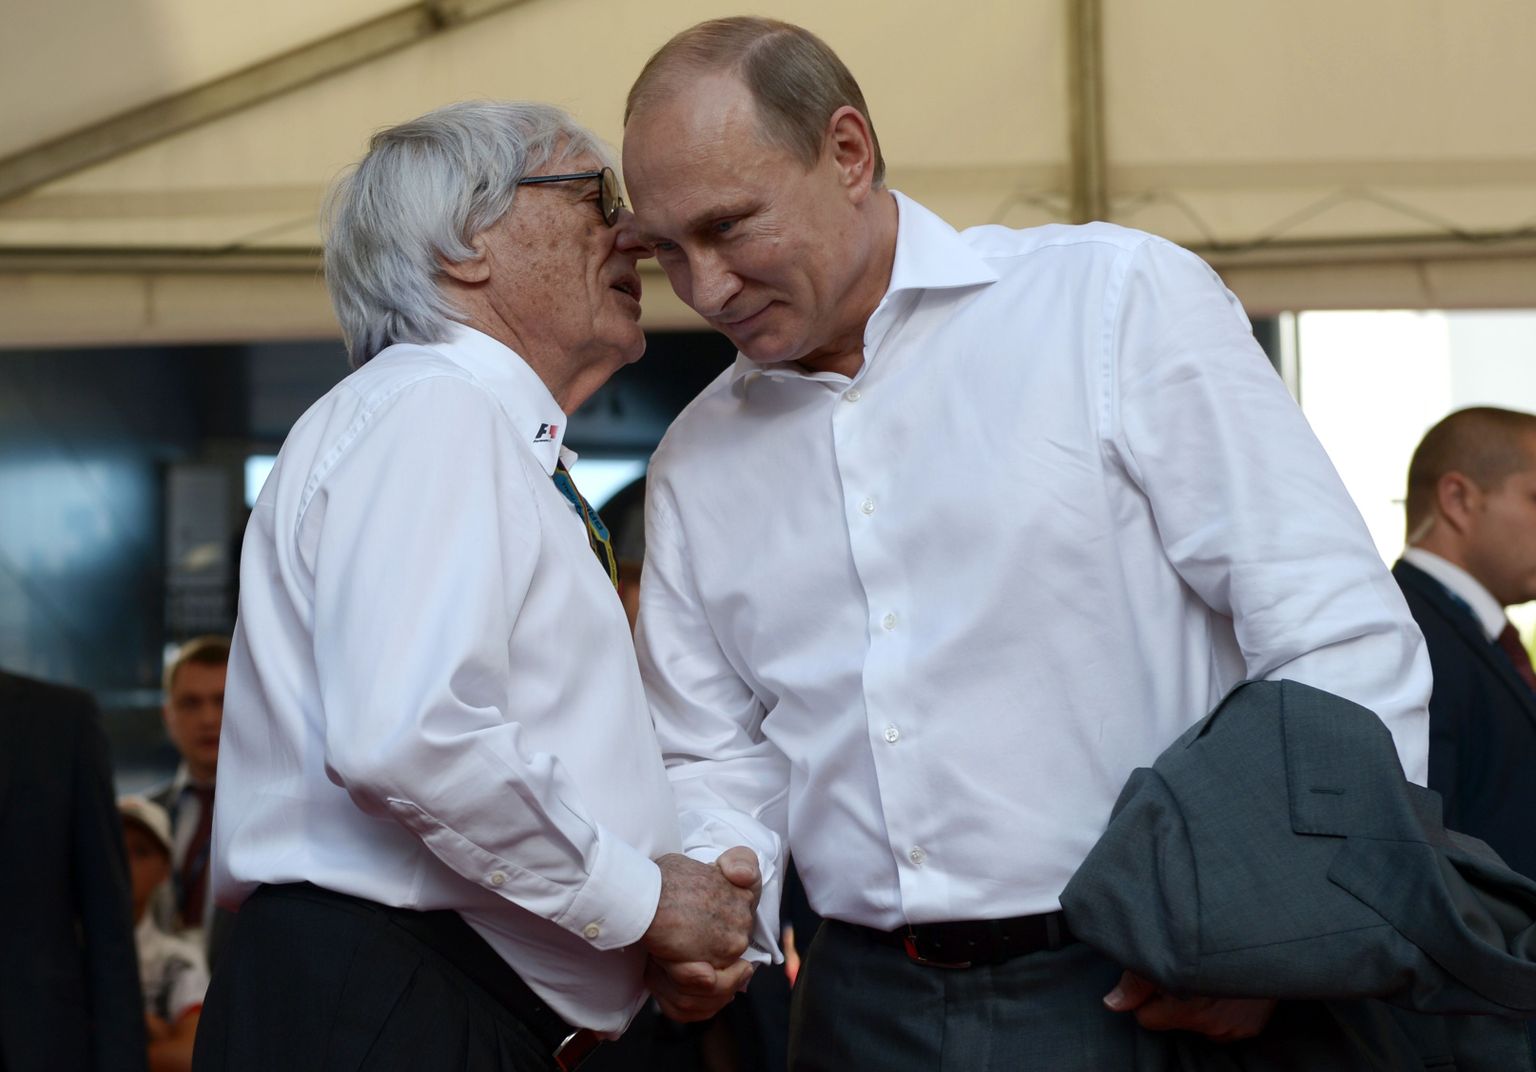 Bernie Ecclestone suutis 2014. aastal viia vormel-1 sarja Venemaale ning Sotšis peetud etapi ajal oli kogenud ärimees suur sõber Venemaa presidendi Vladimir Putiniga.